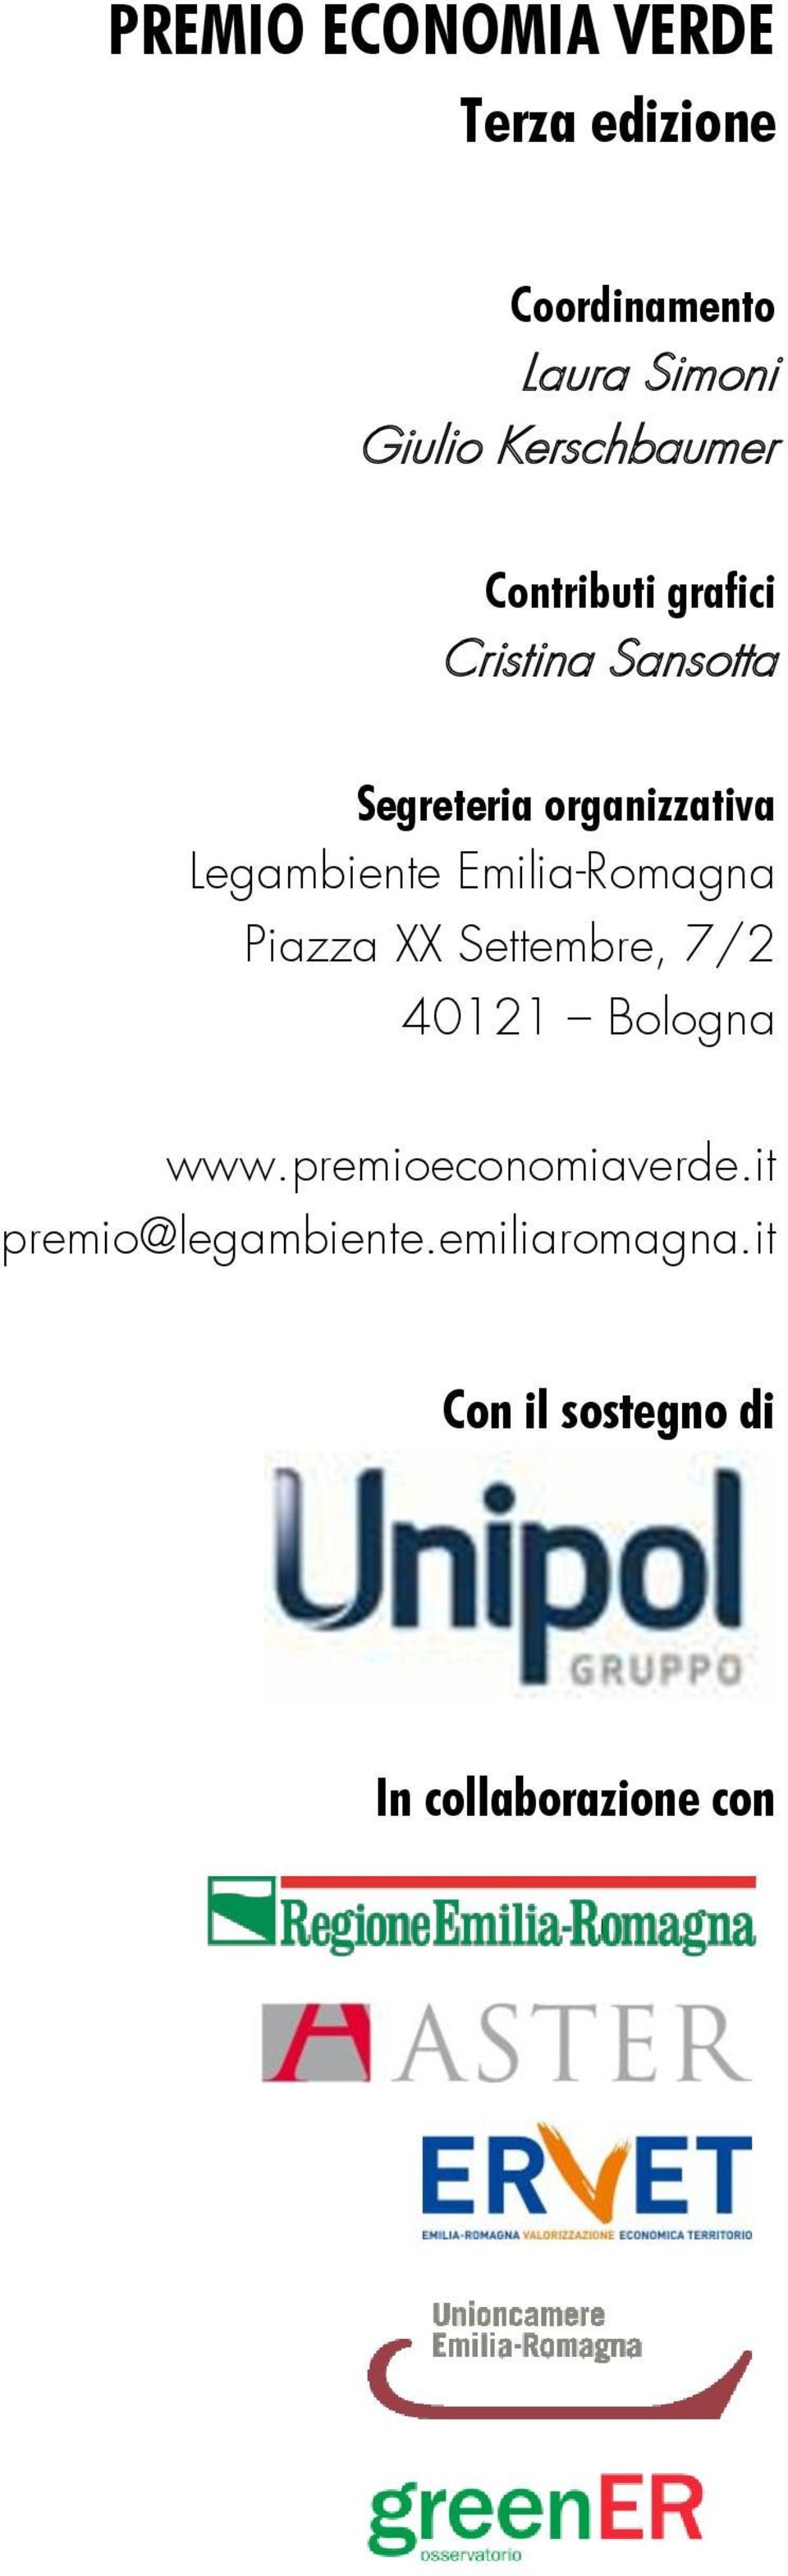 Legambiente Emilia-Romagna Piazza XX Settembre, 7/2 40121 Bologna www.